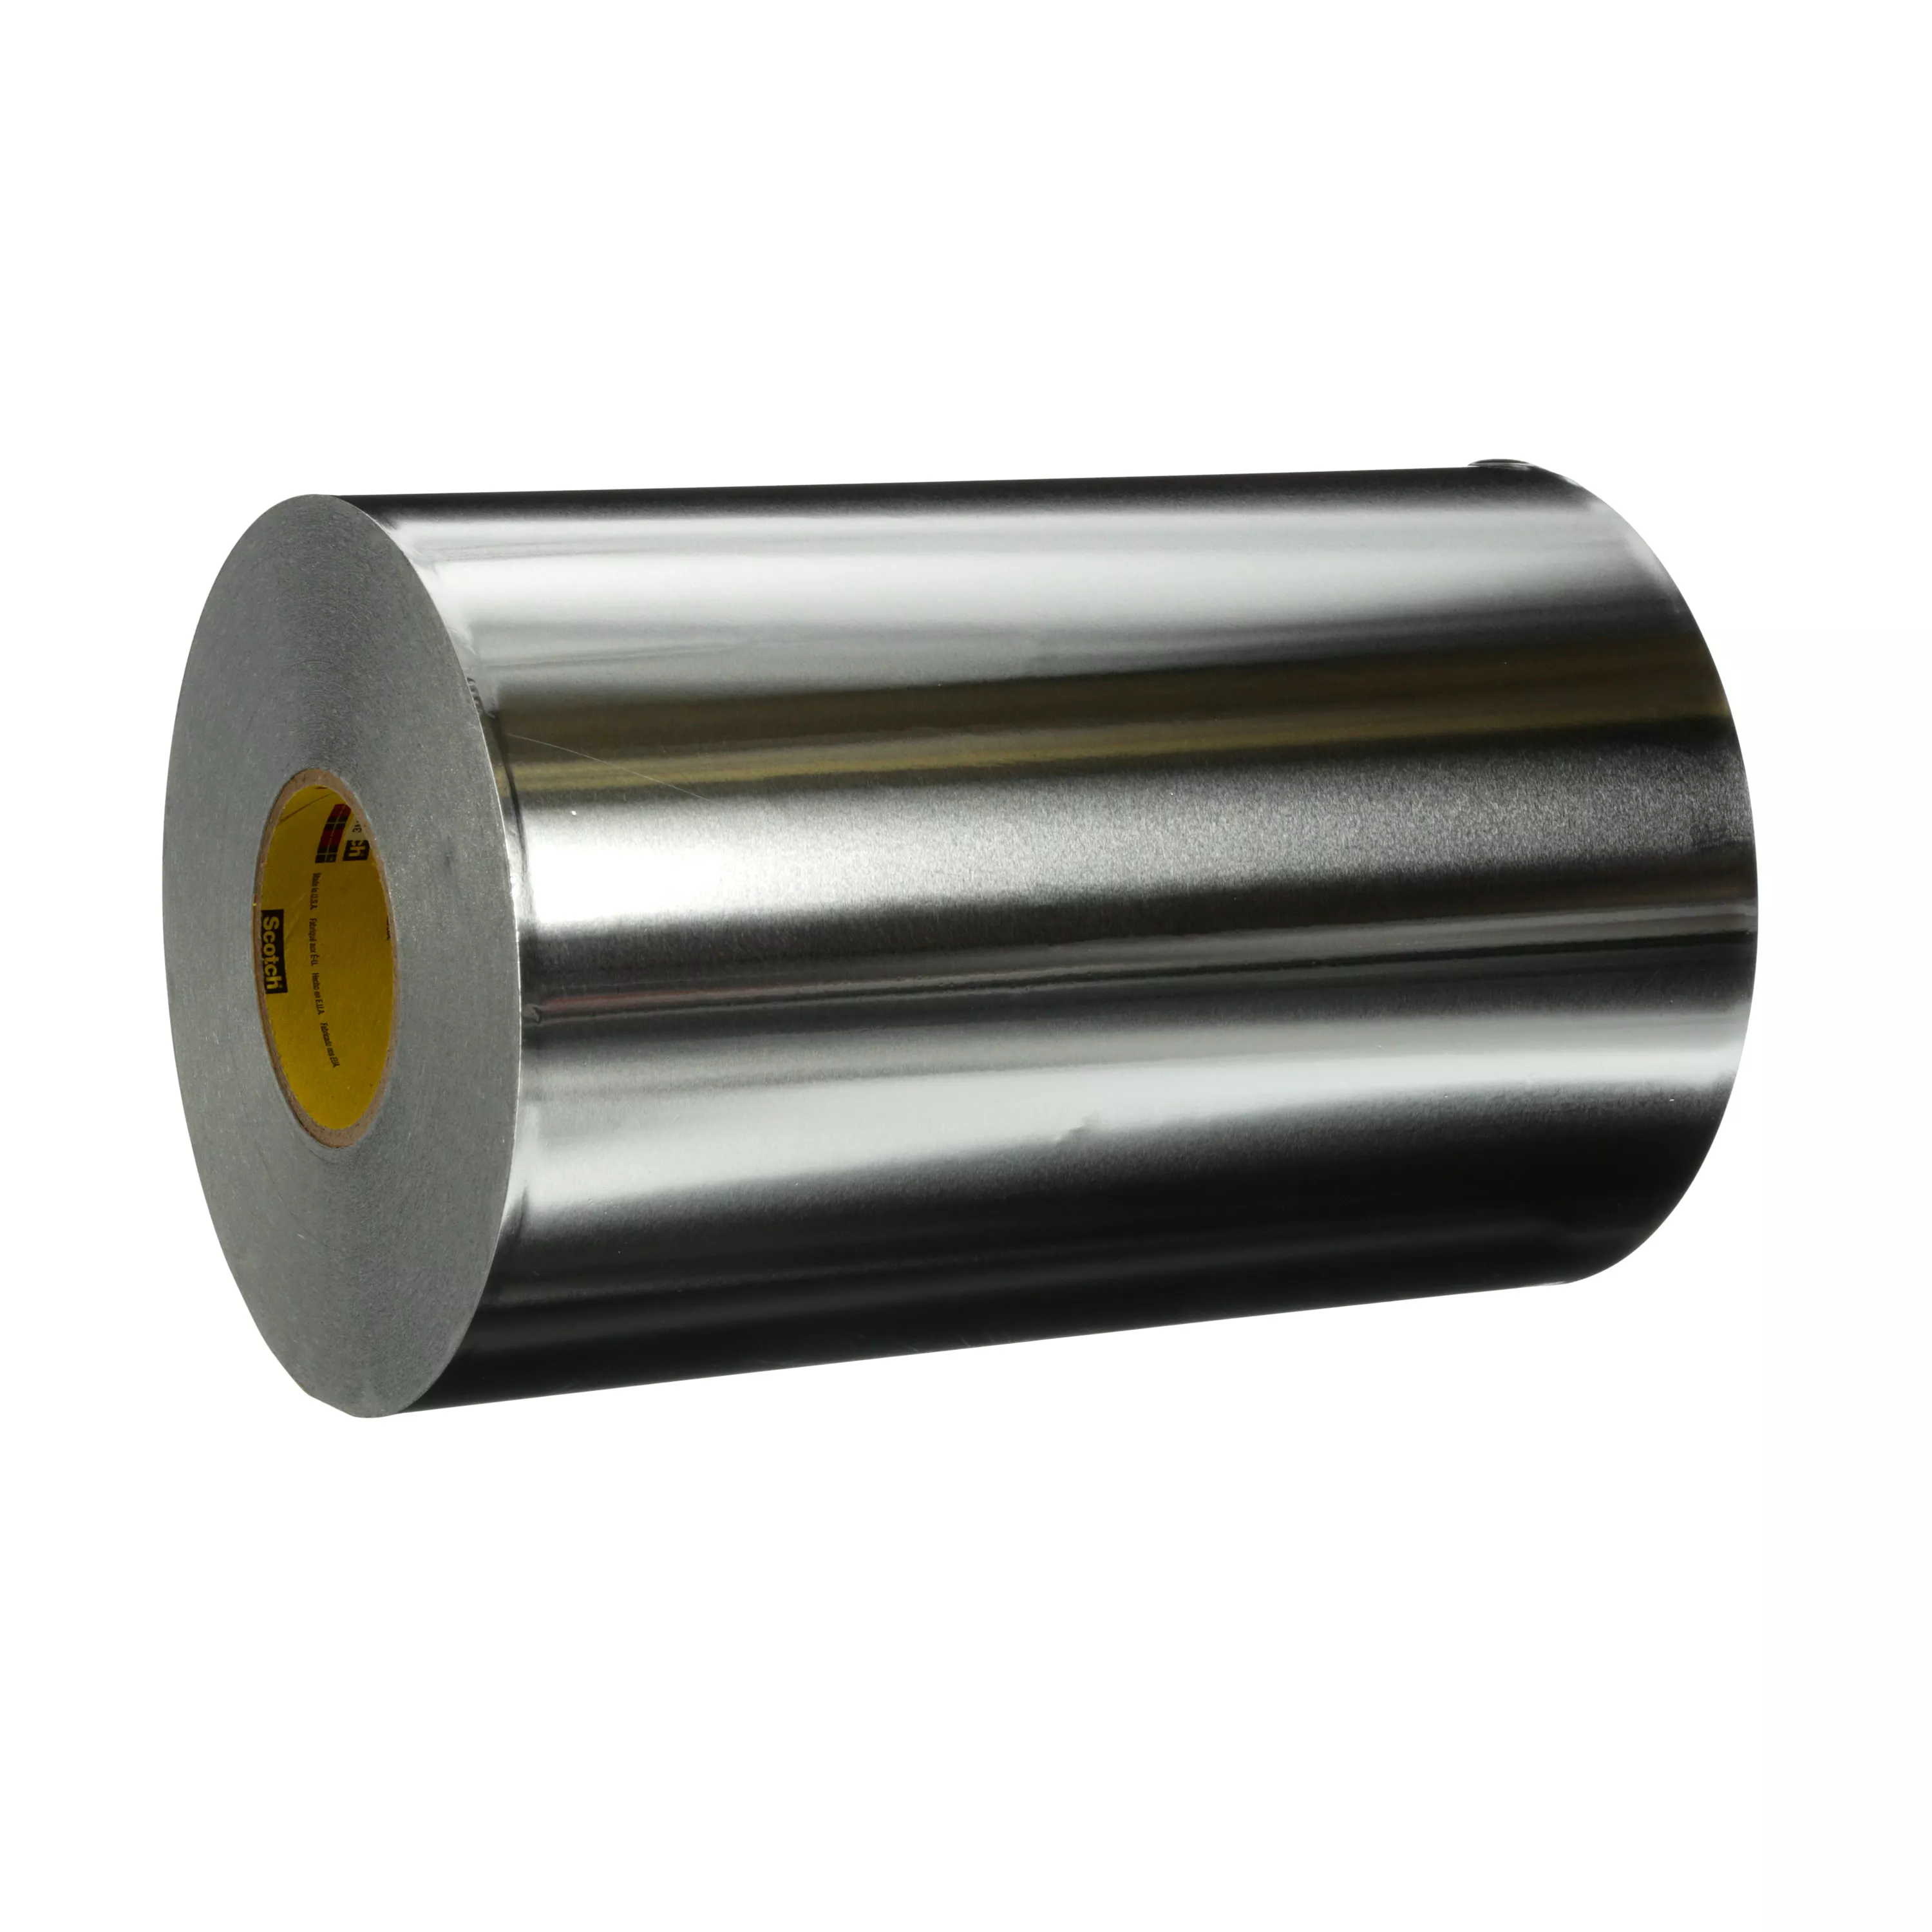 3M™ High Temperature Aluminum Foil Tape 433L, Silver, 13 3/4 in x 180
yd, 3.5 mil, 1 Roll/Case